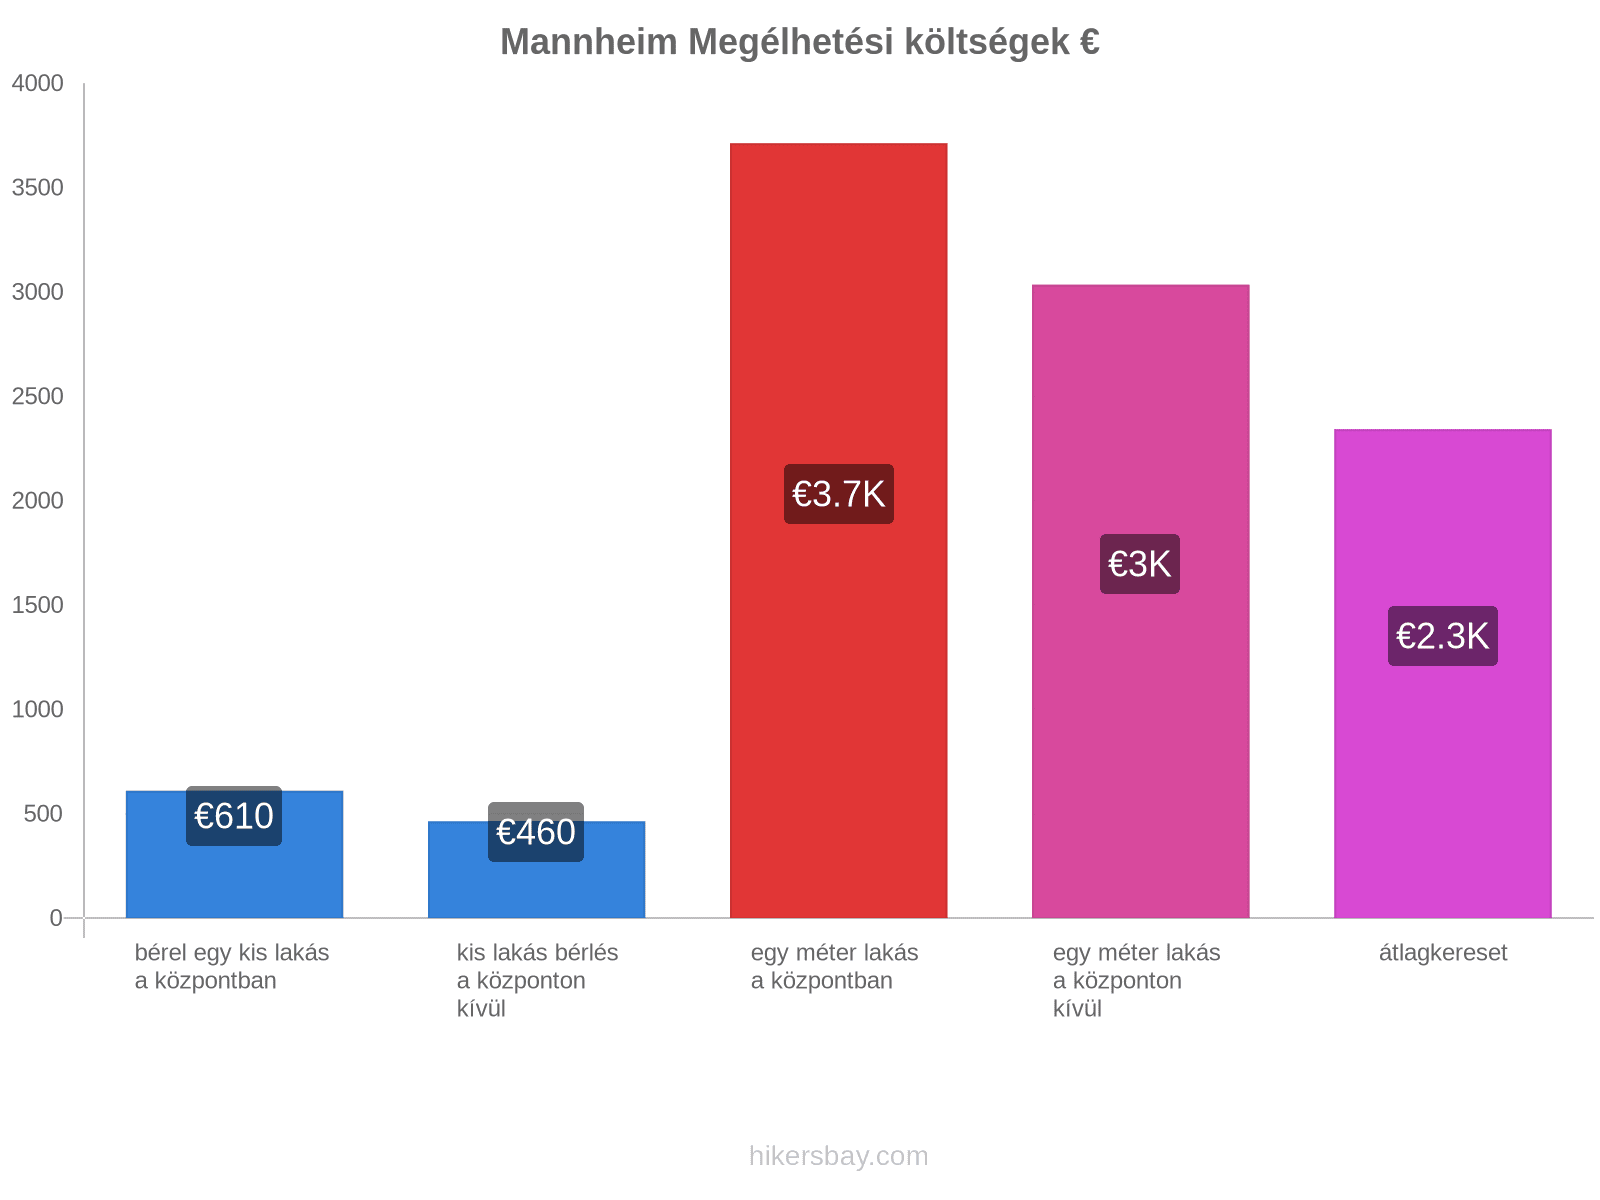 Mannheim megélhetési költségek hikersbay.com